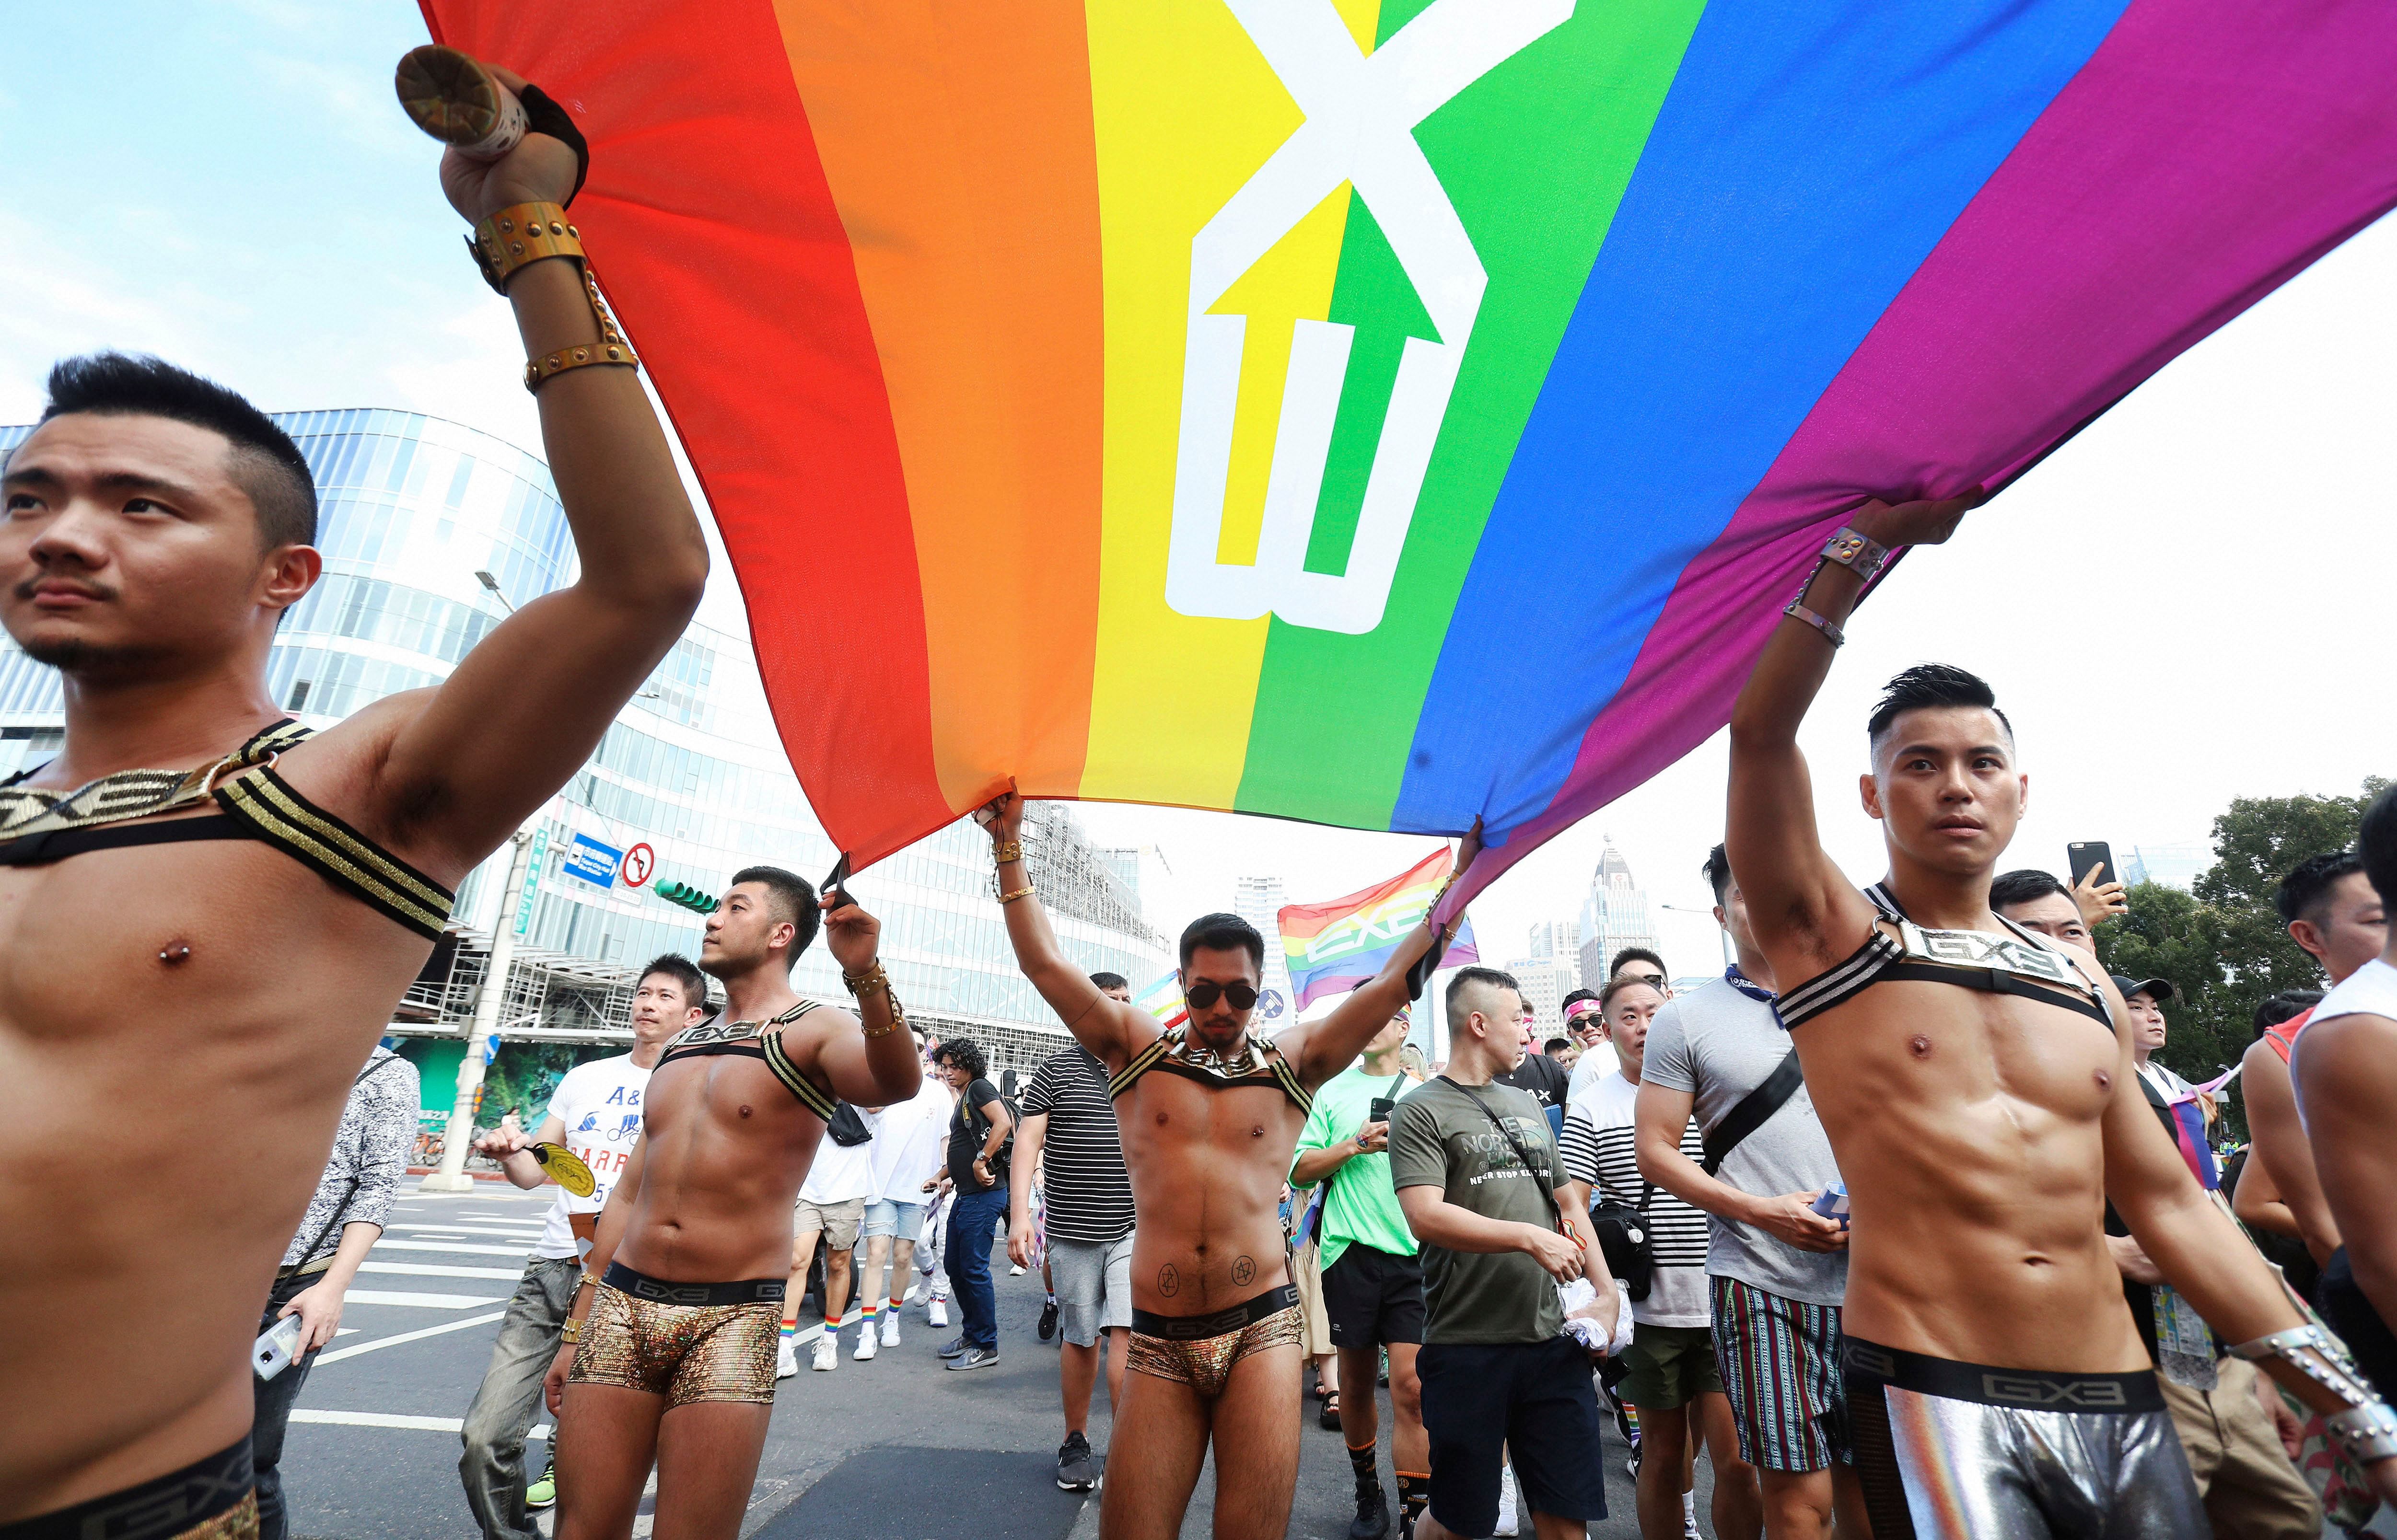 Апэ:википедия о гомосексуализме — традиция